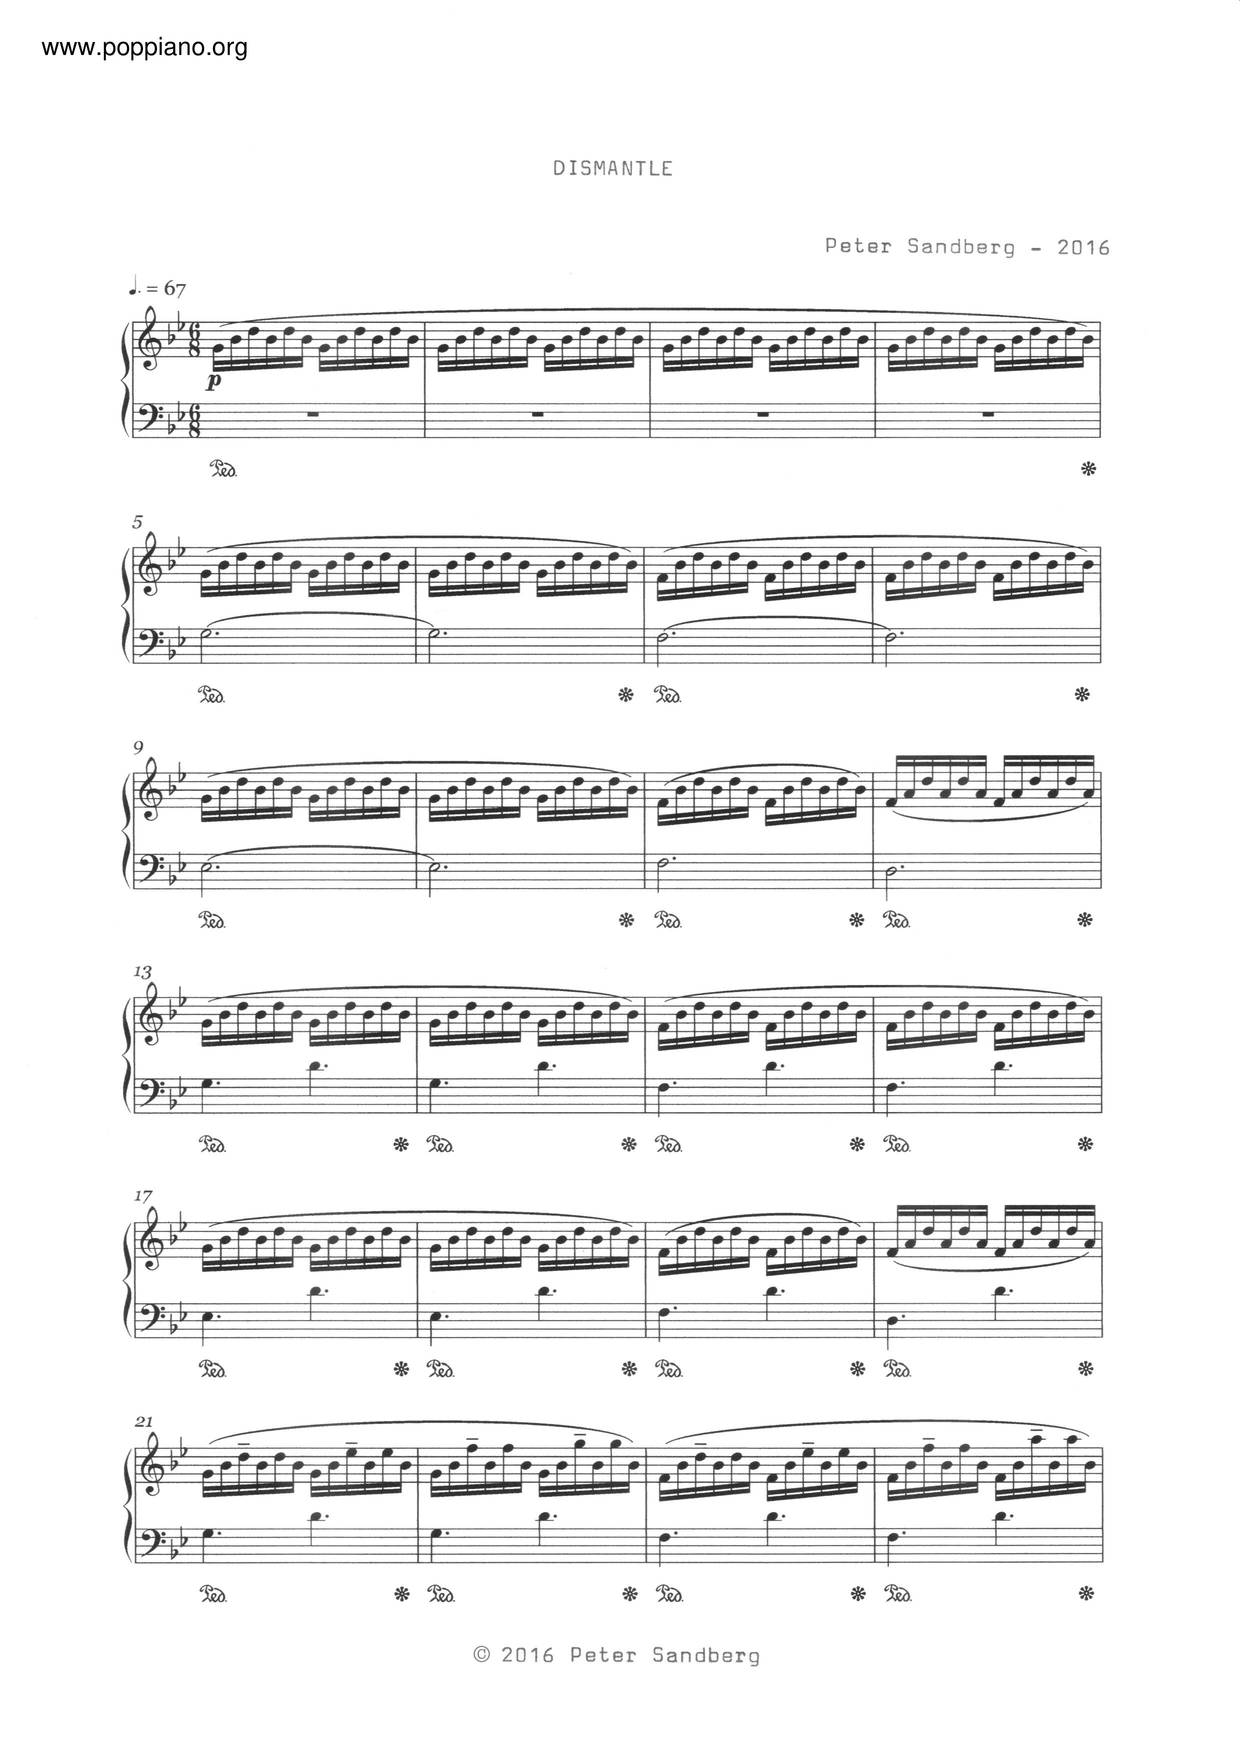 Peter Sandberg-Dismantle Sheet Music pdf, - Free Score Download ★